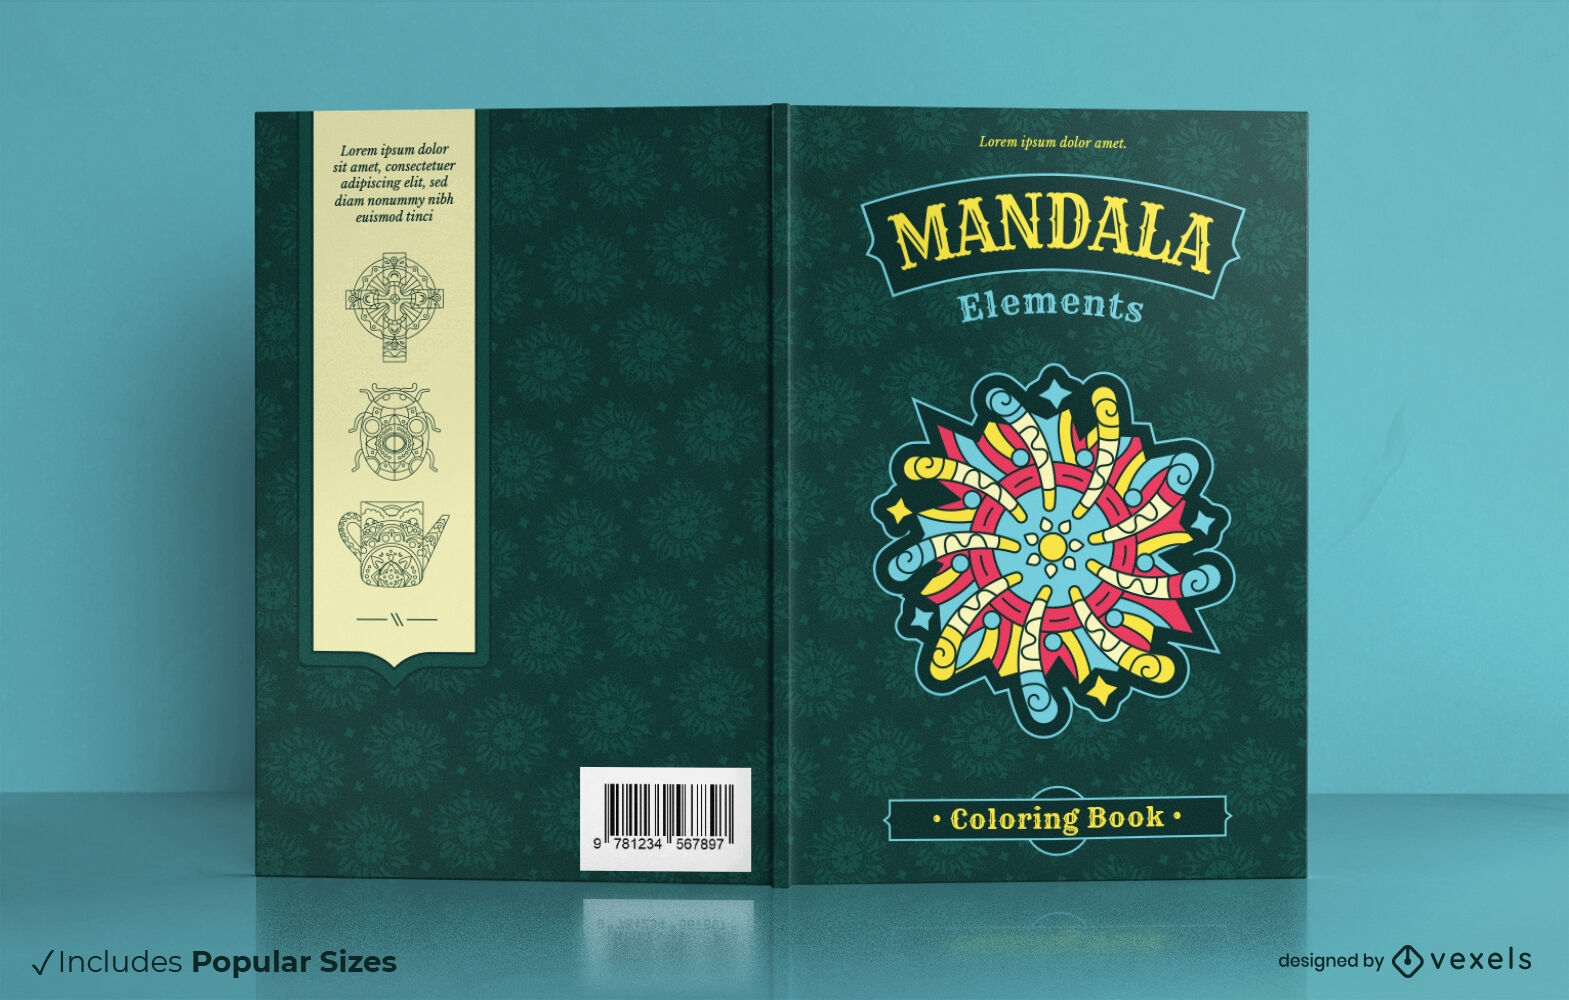 Mandala drawings book cover design